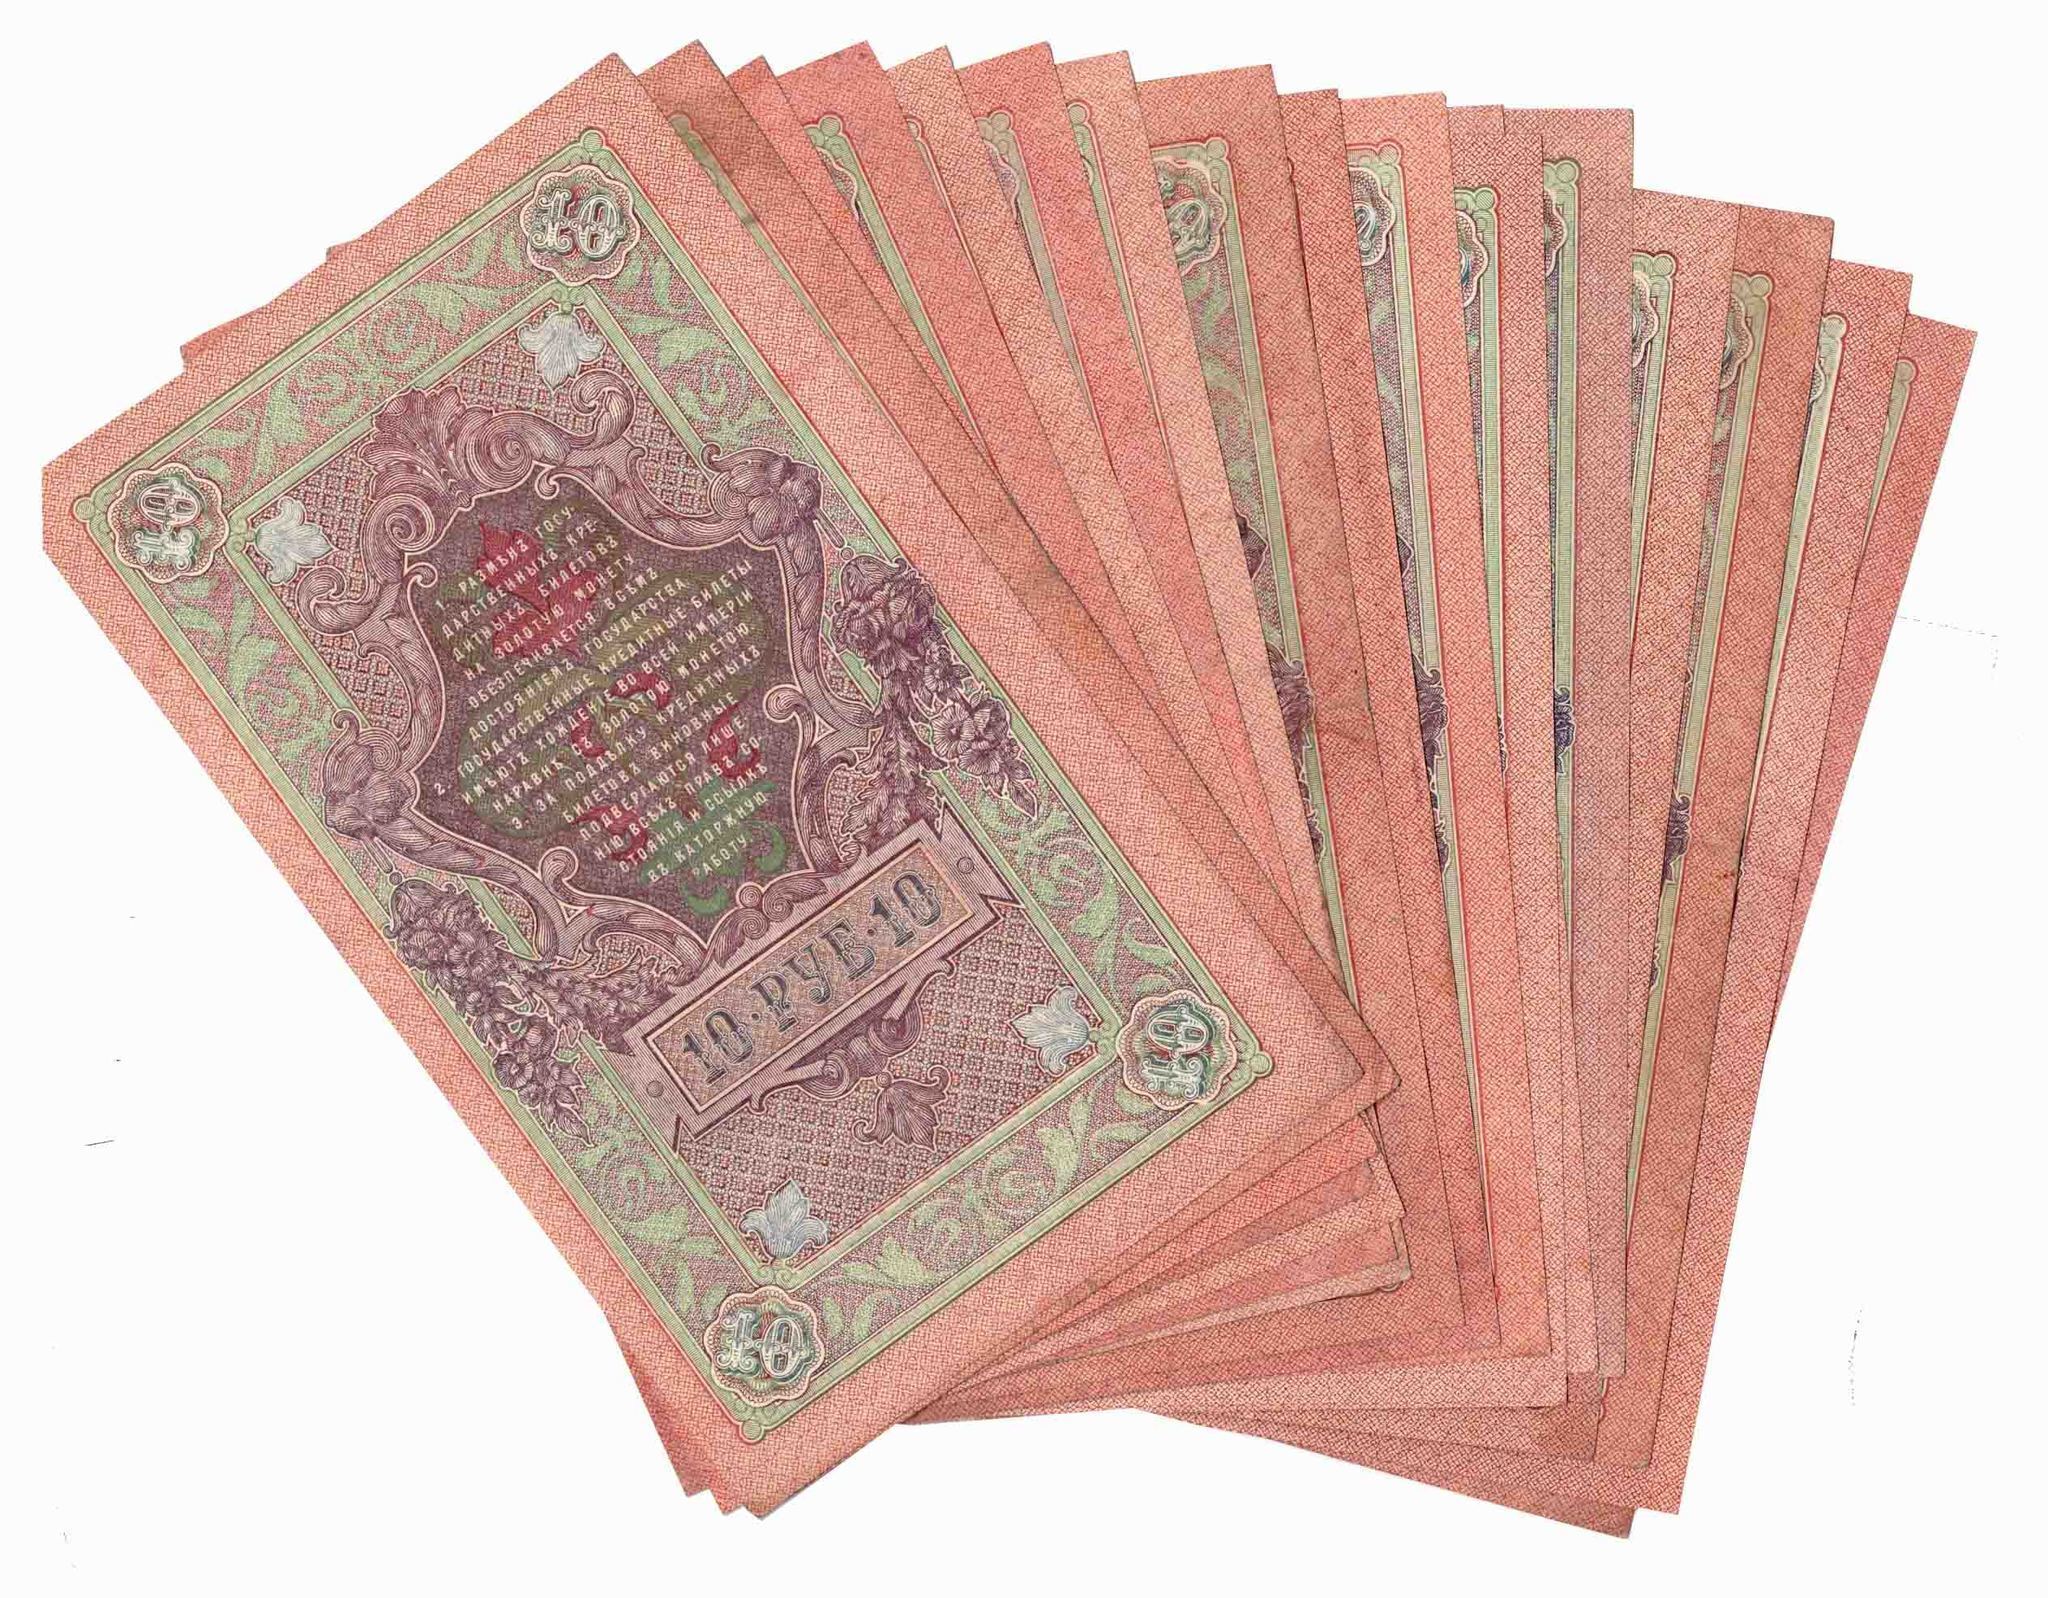 Купюры 1909. Купюра 1909 года. Пачка царских банкнот. Кредитный билет 10 рублей 1909 года цена бумажный стоимость.